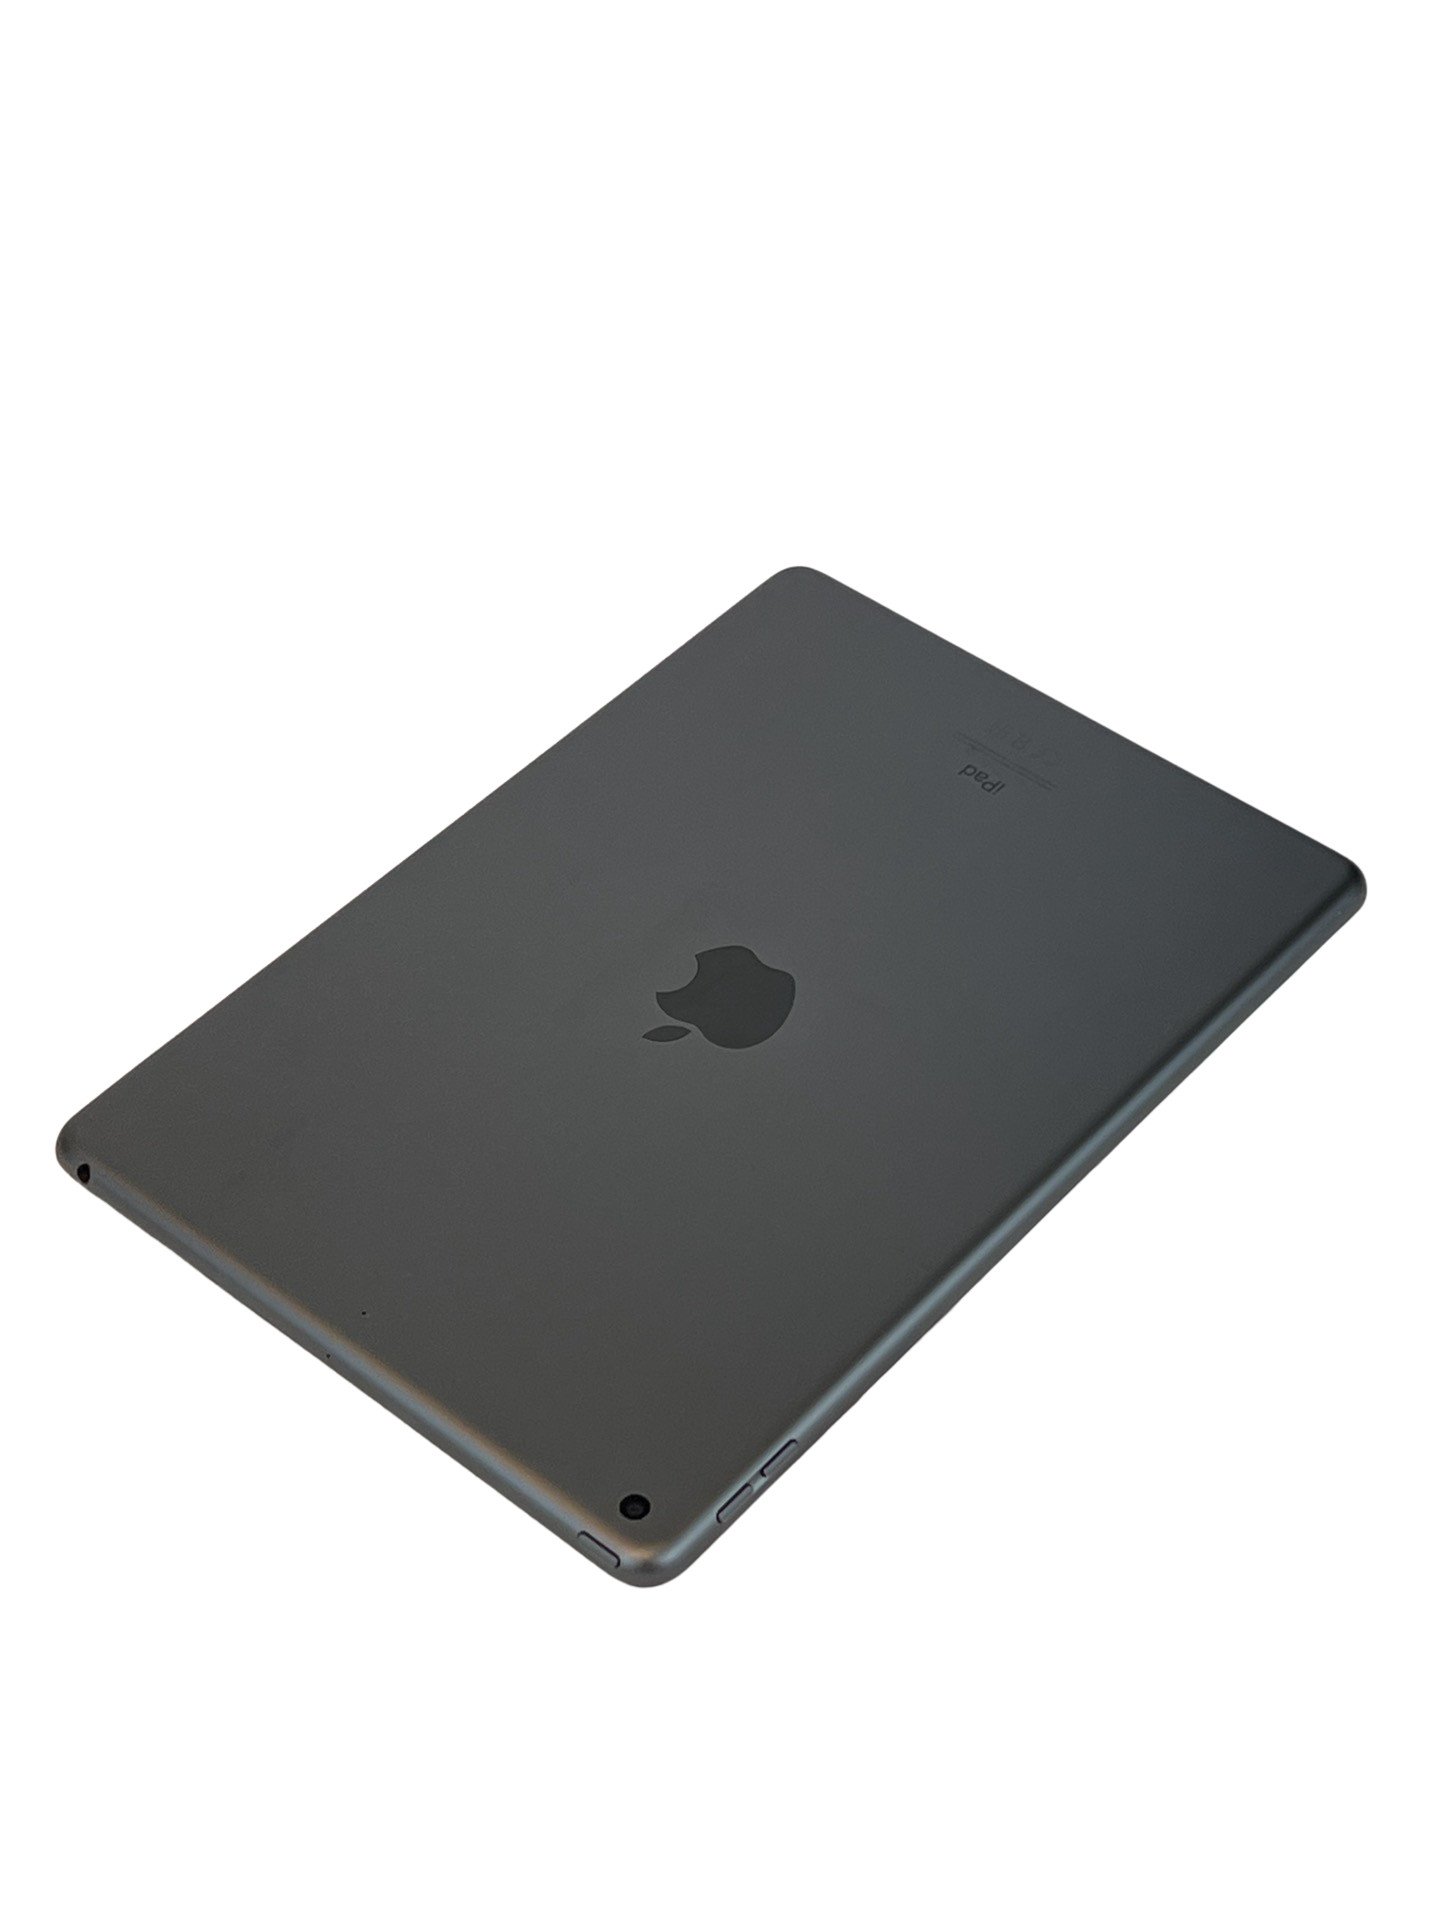  2019 Apple iPad 7th Gen (10.2 inch, Wi-Fi, 32GB) Silver  (Renewed) : Electronics